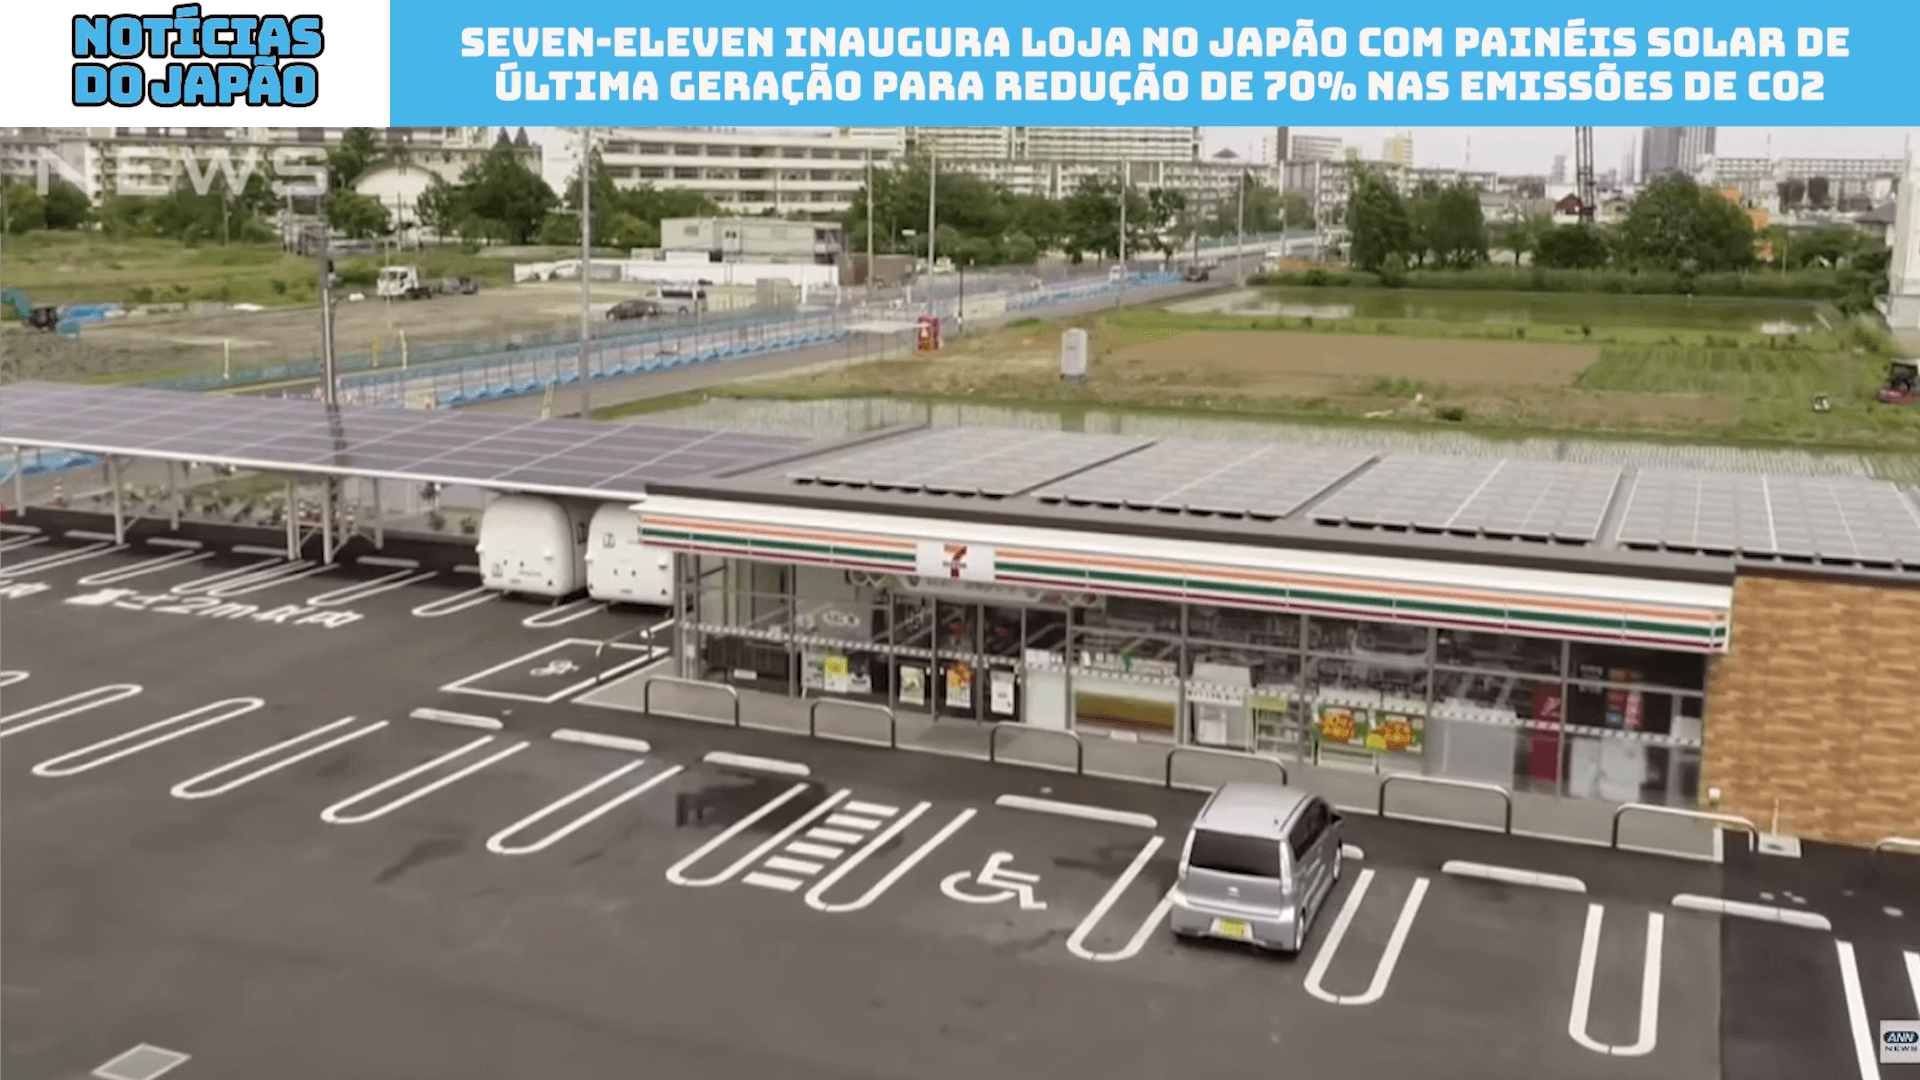 Seven-Eleven inaugura loja no Japão com painéis solar de última geração para redução de 70% nas emissões de CO2